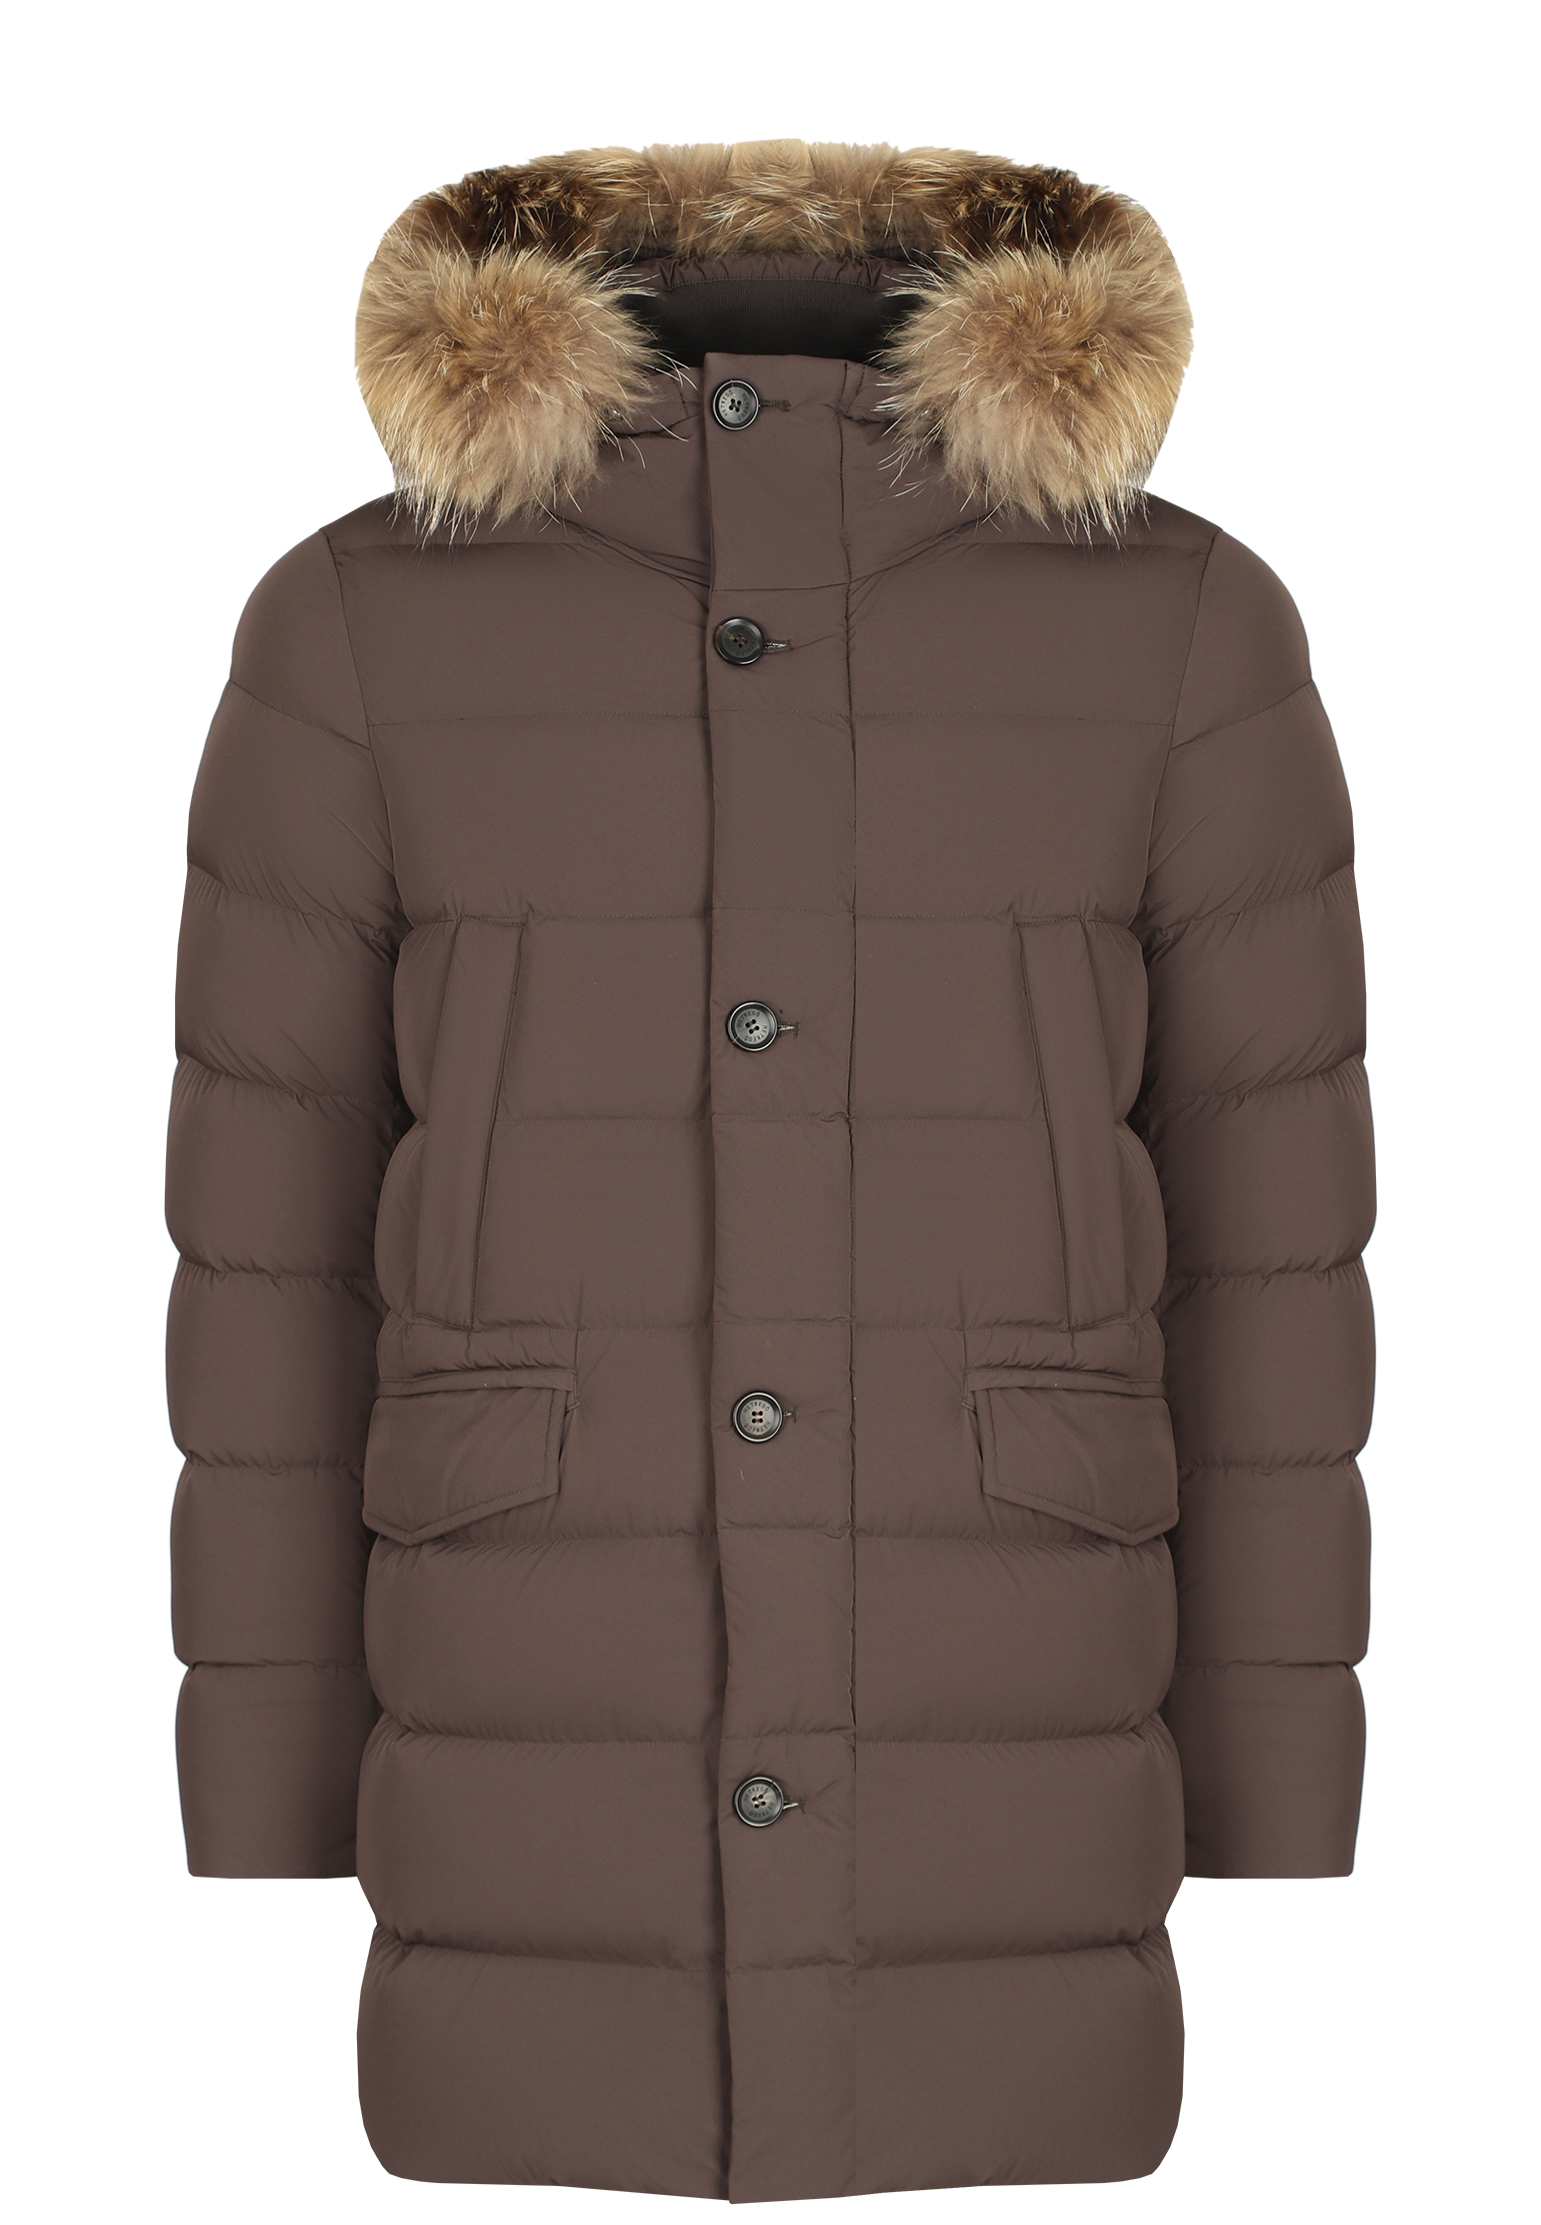 Куртка мужская HETREGO 145159 коричневая 60